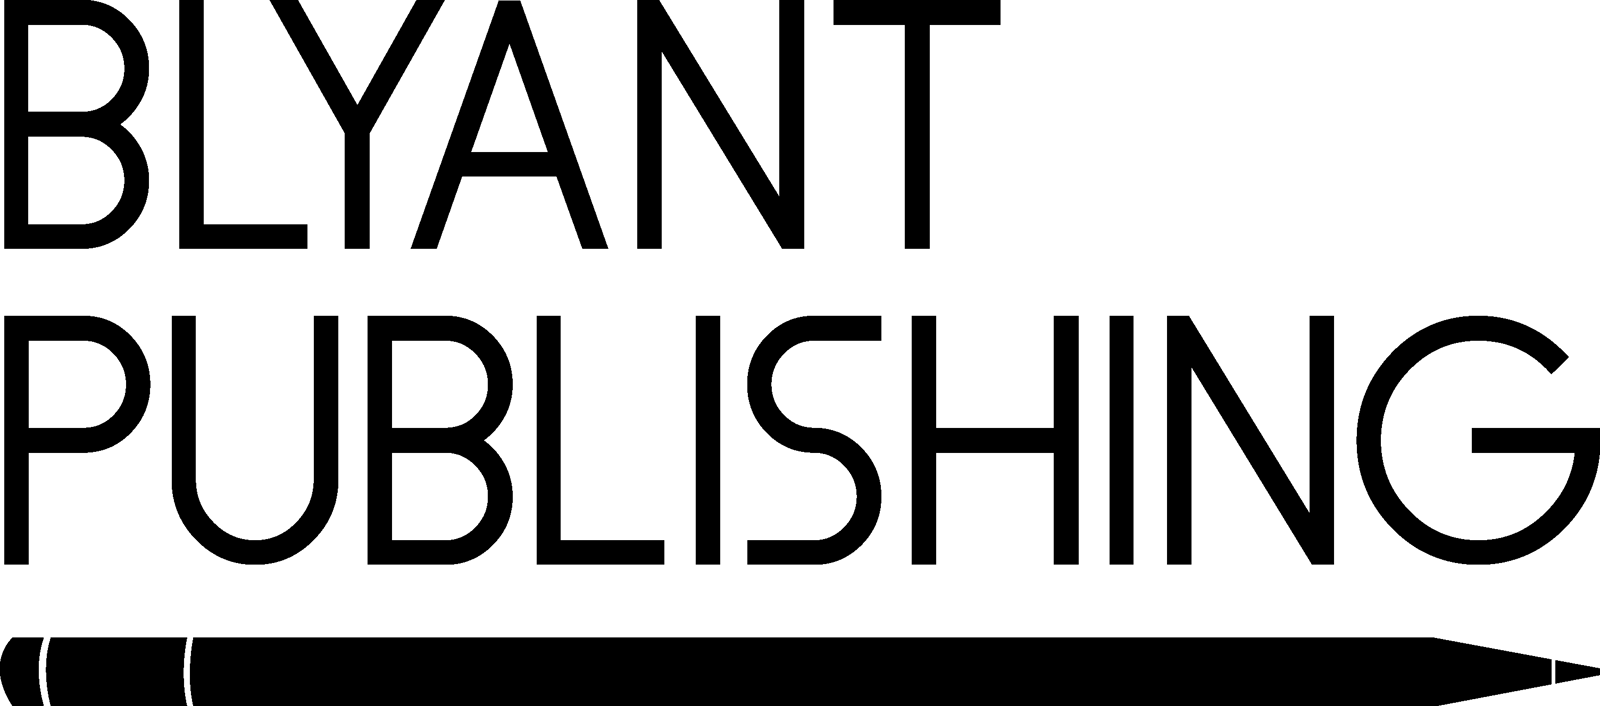 Blyant Publishing